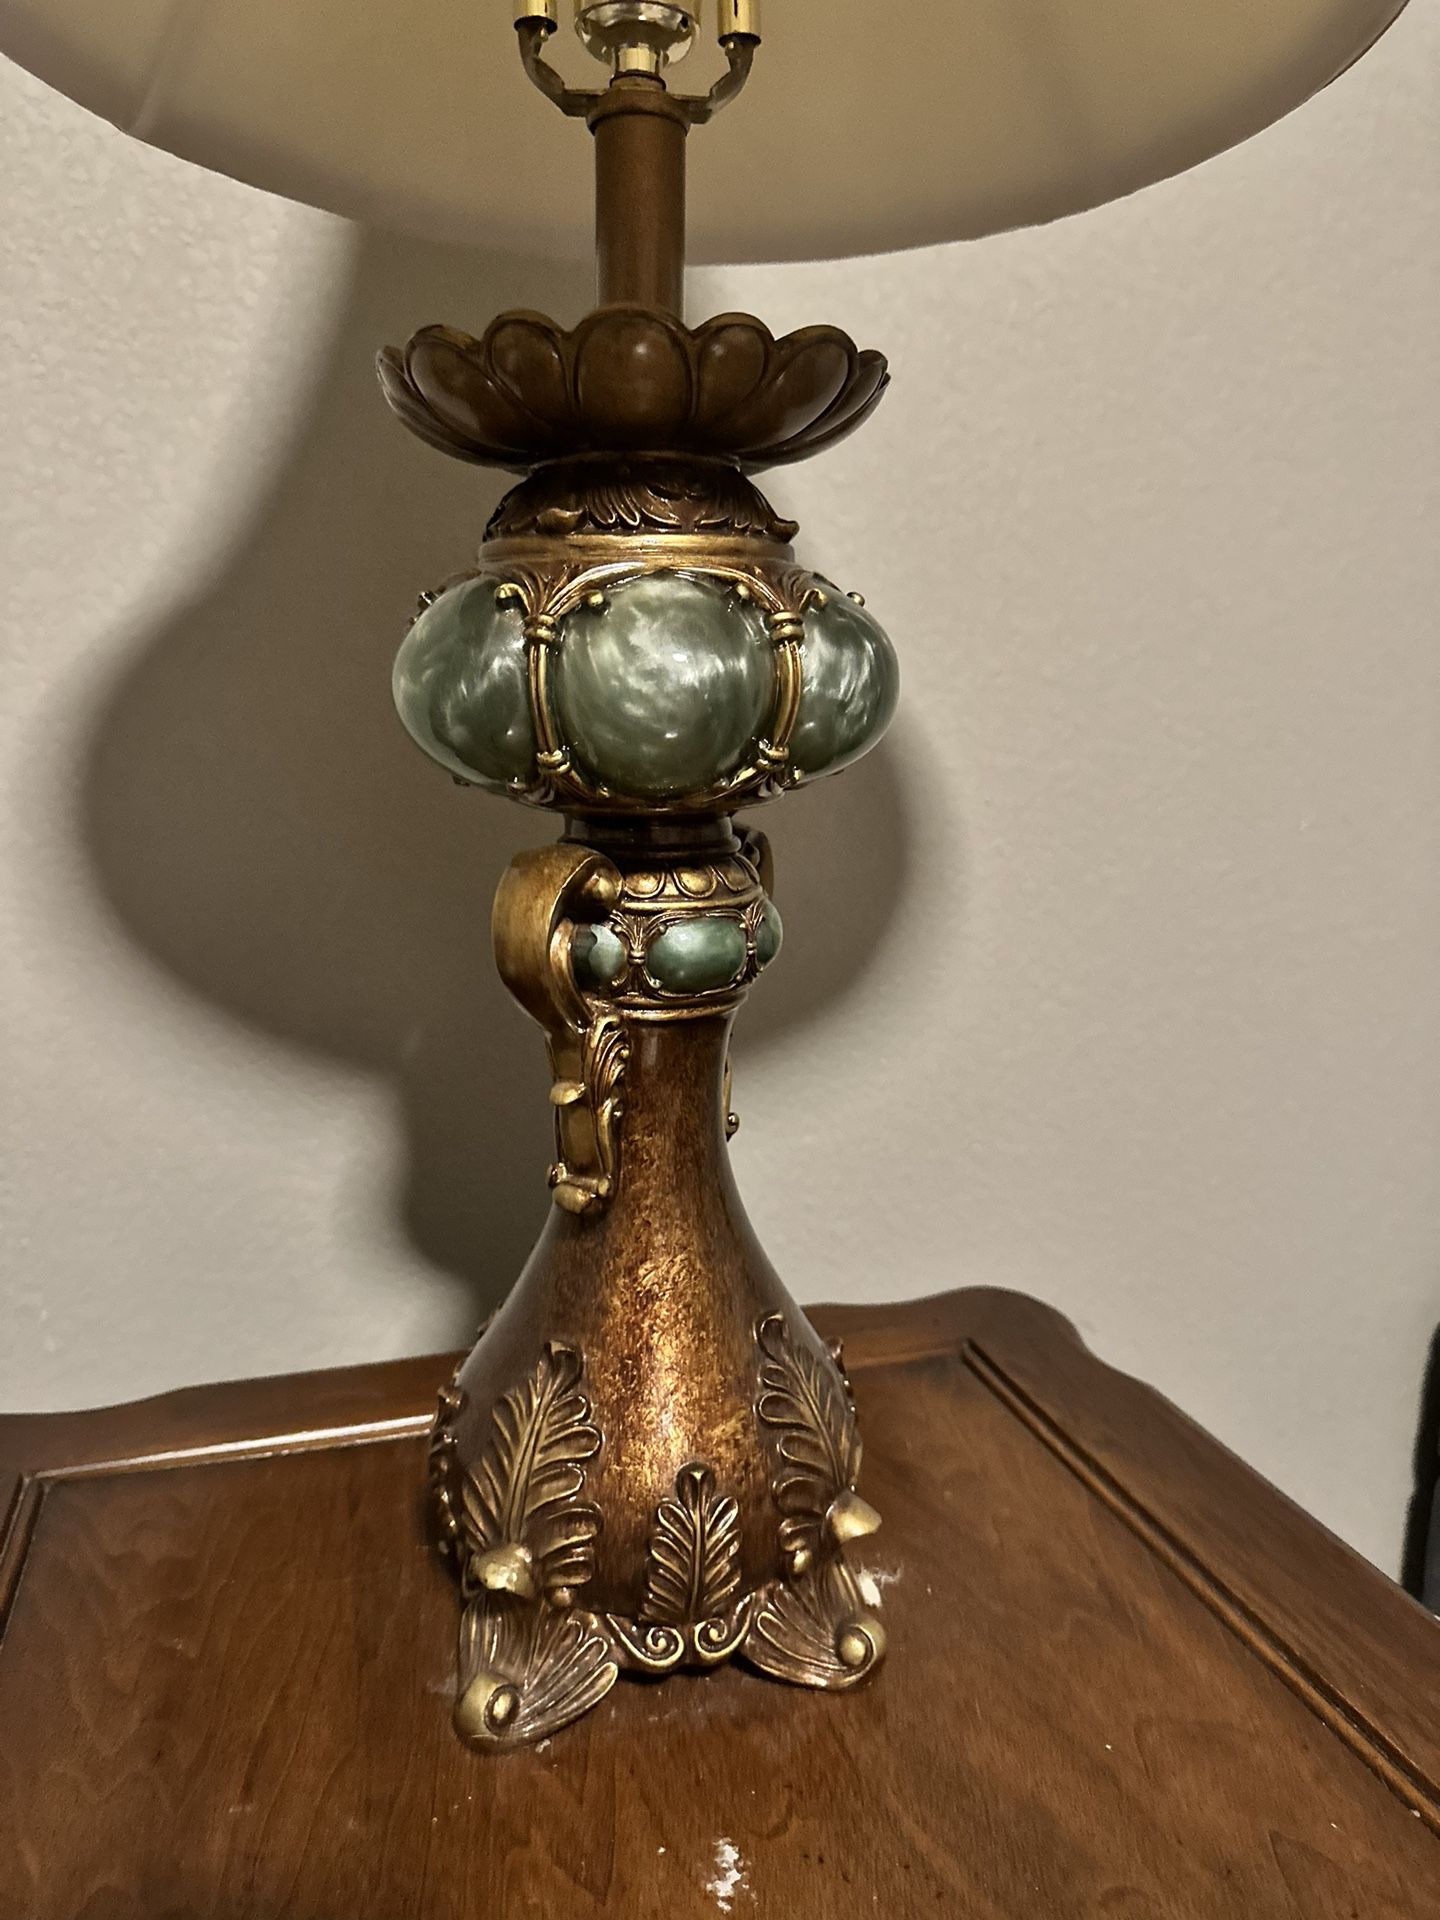 Antique Lamps